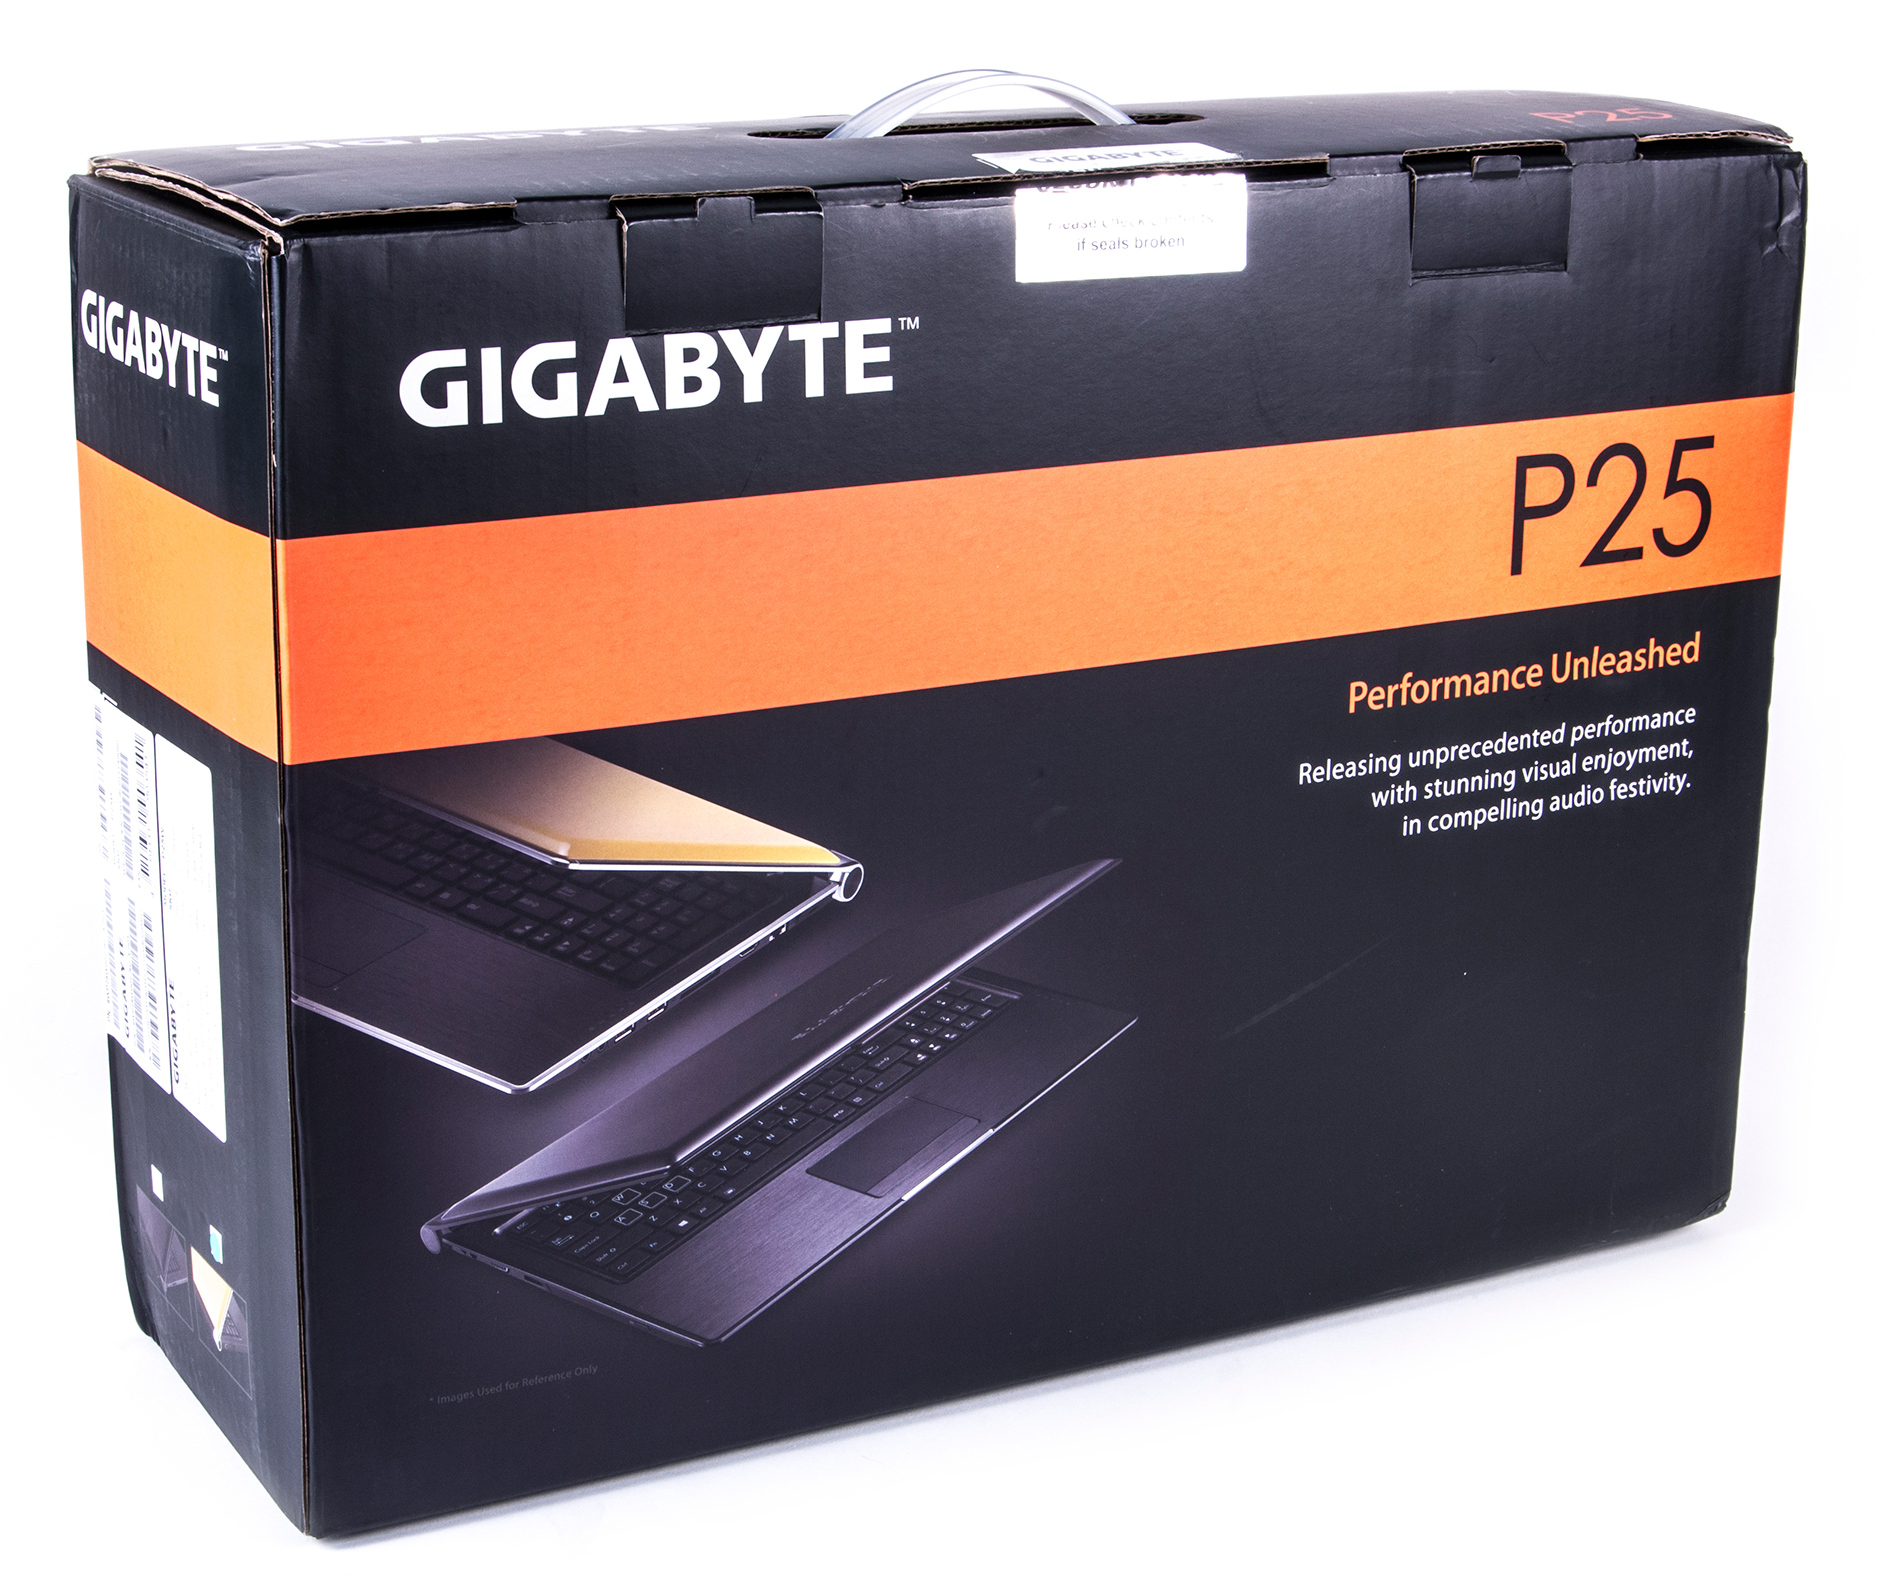 Ноутбук Gigabyte P27g V2 Цена